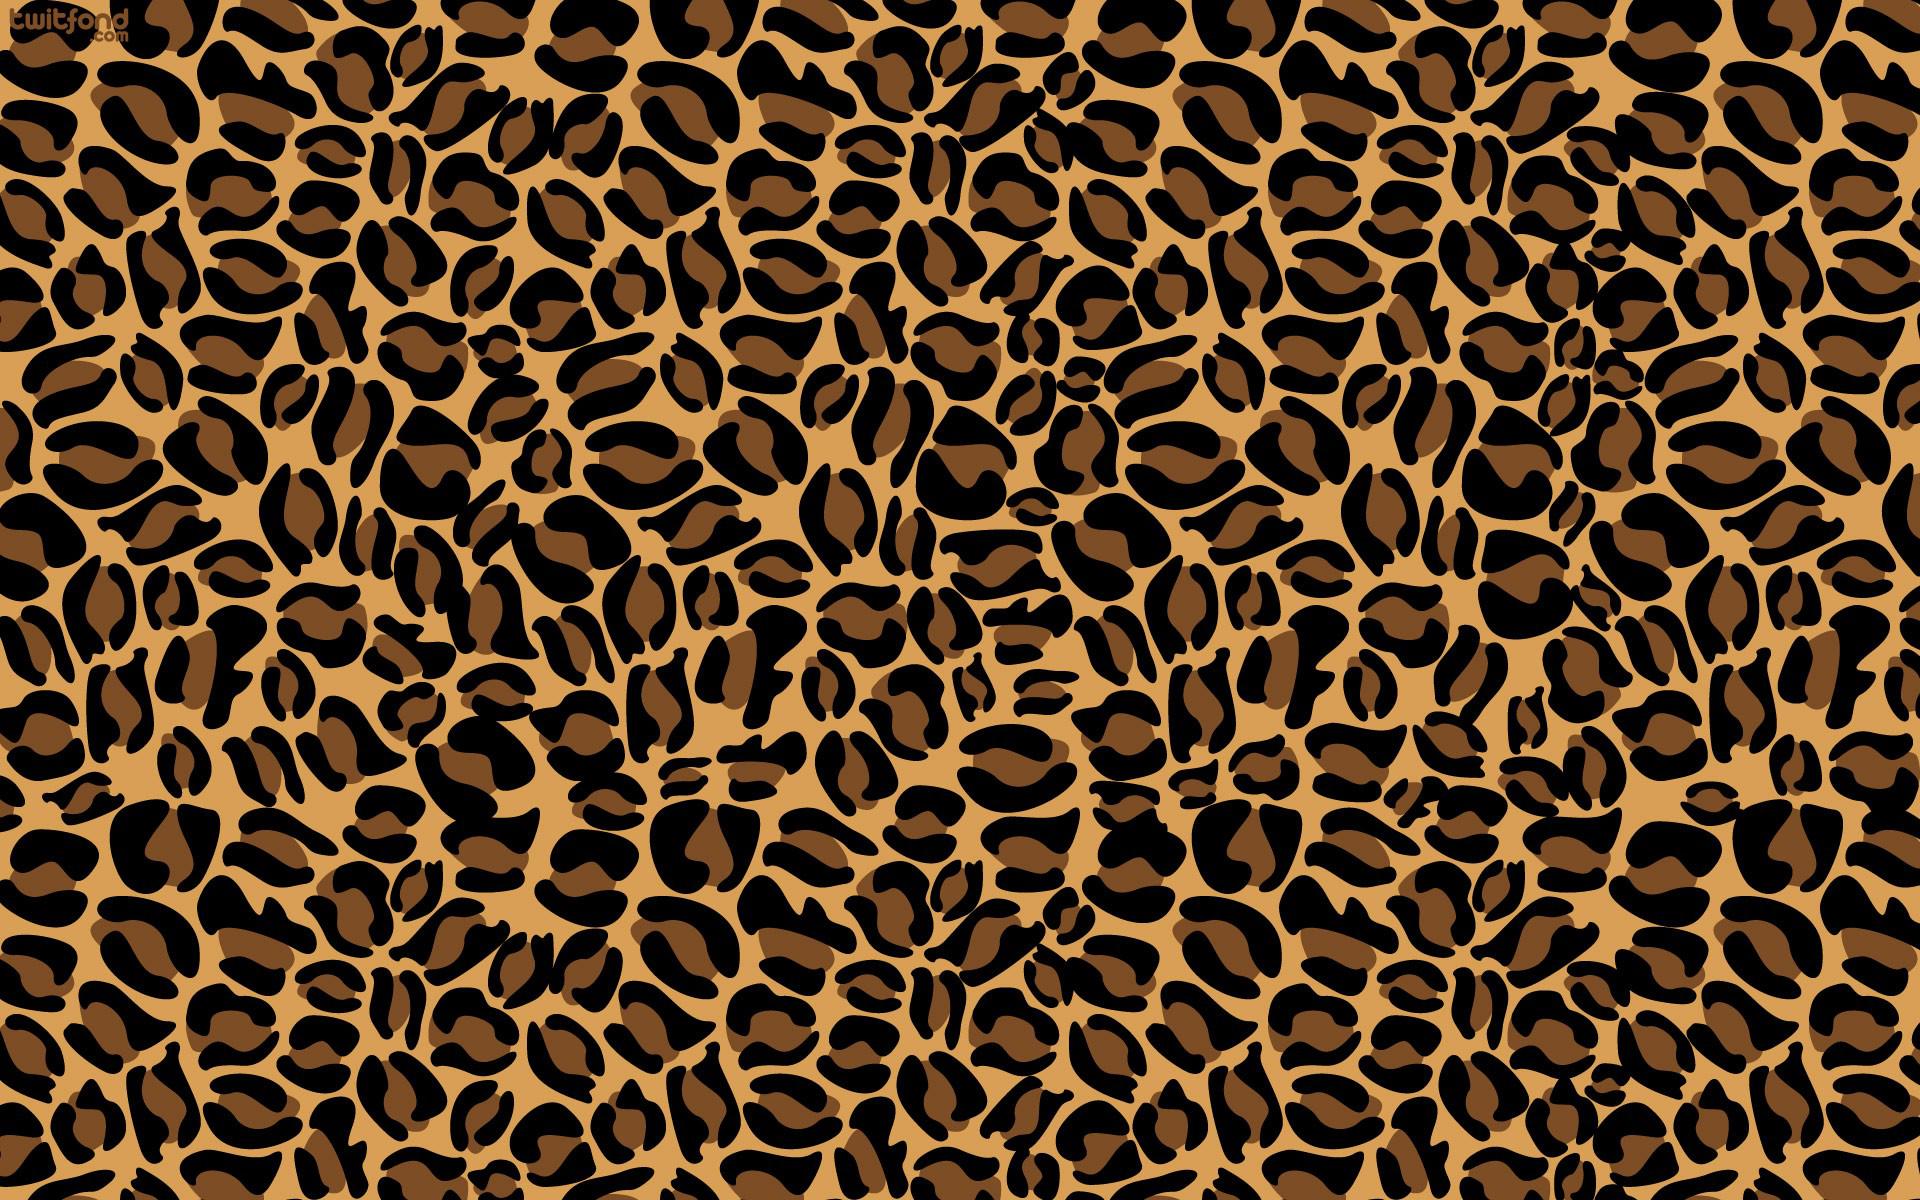 Cheetah fur wallpaper